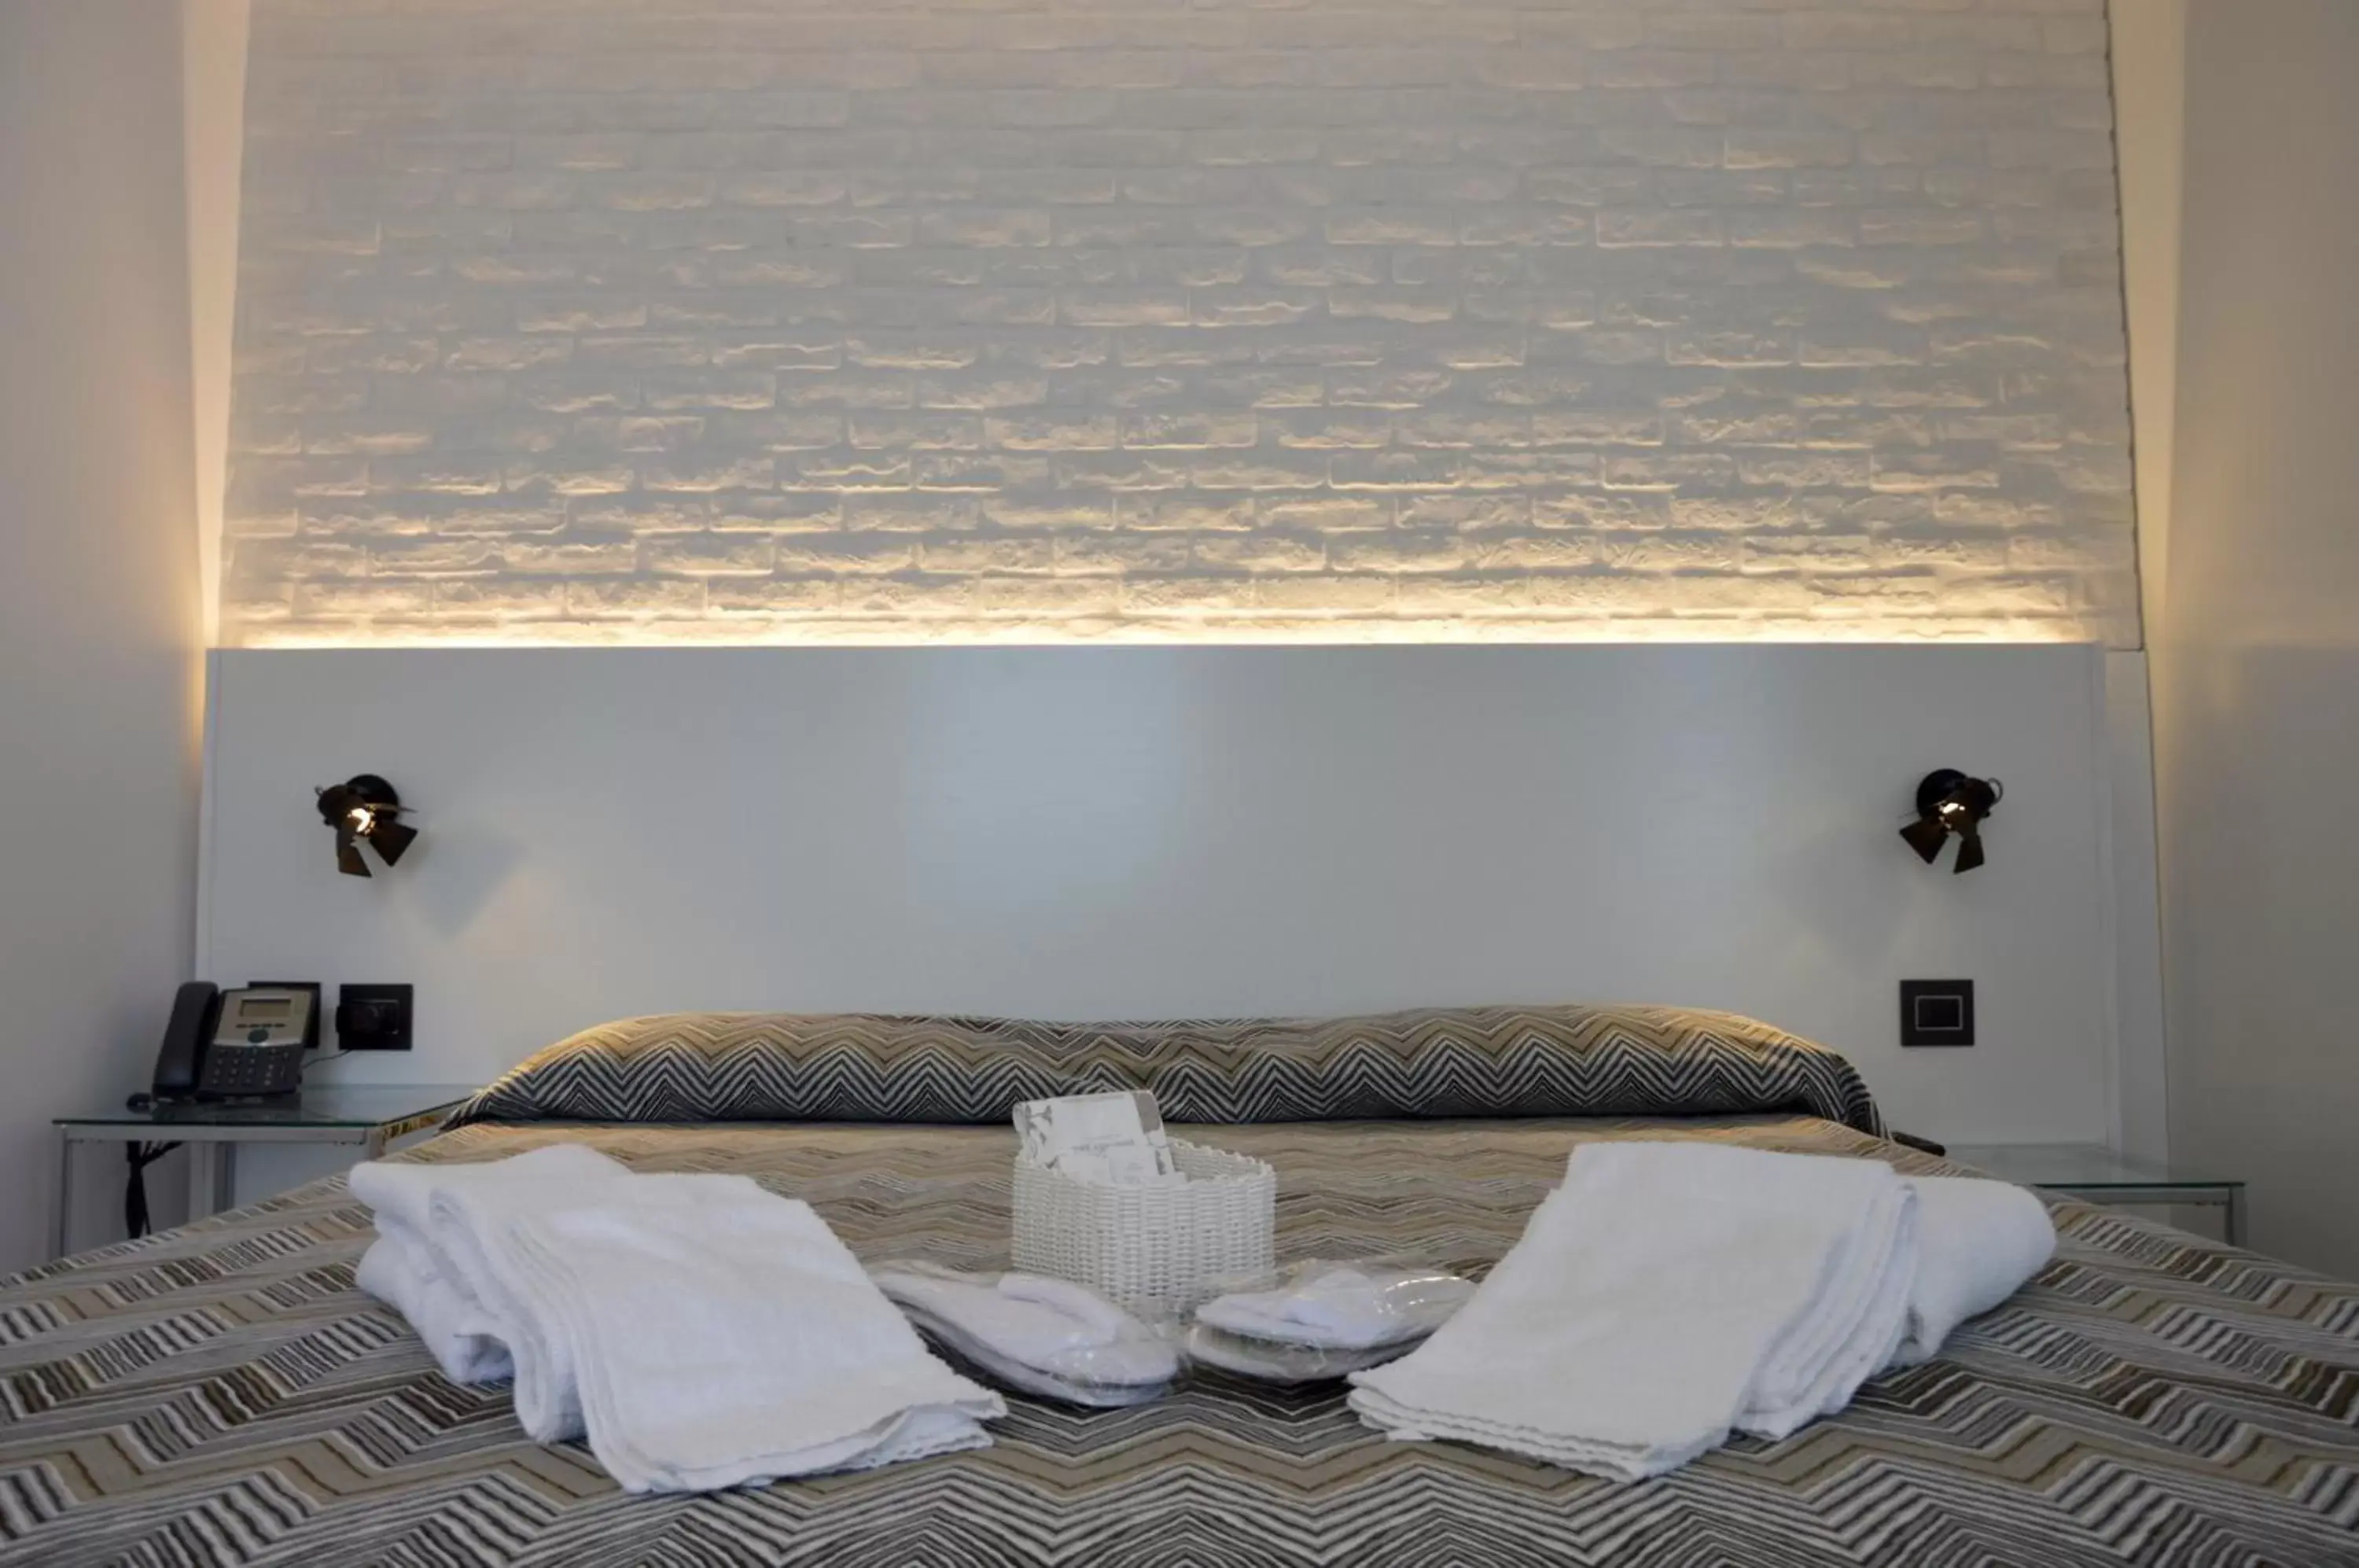 Bed, Room Photo in Relais Piazza Del Plebiscito B&B